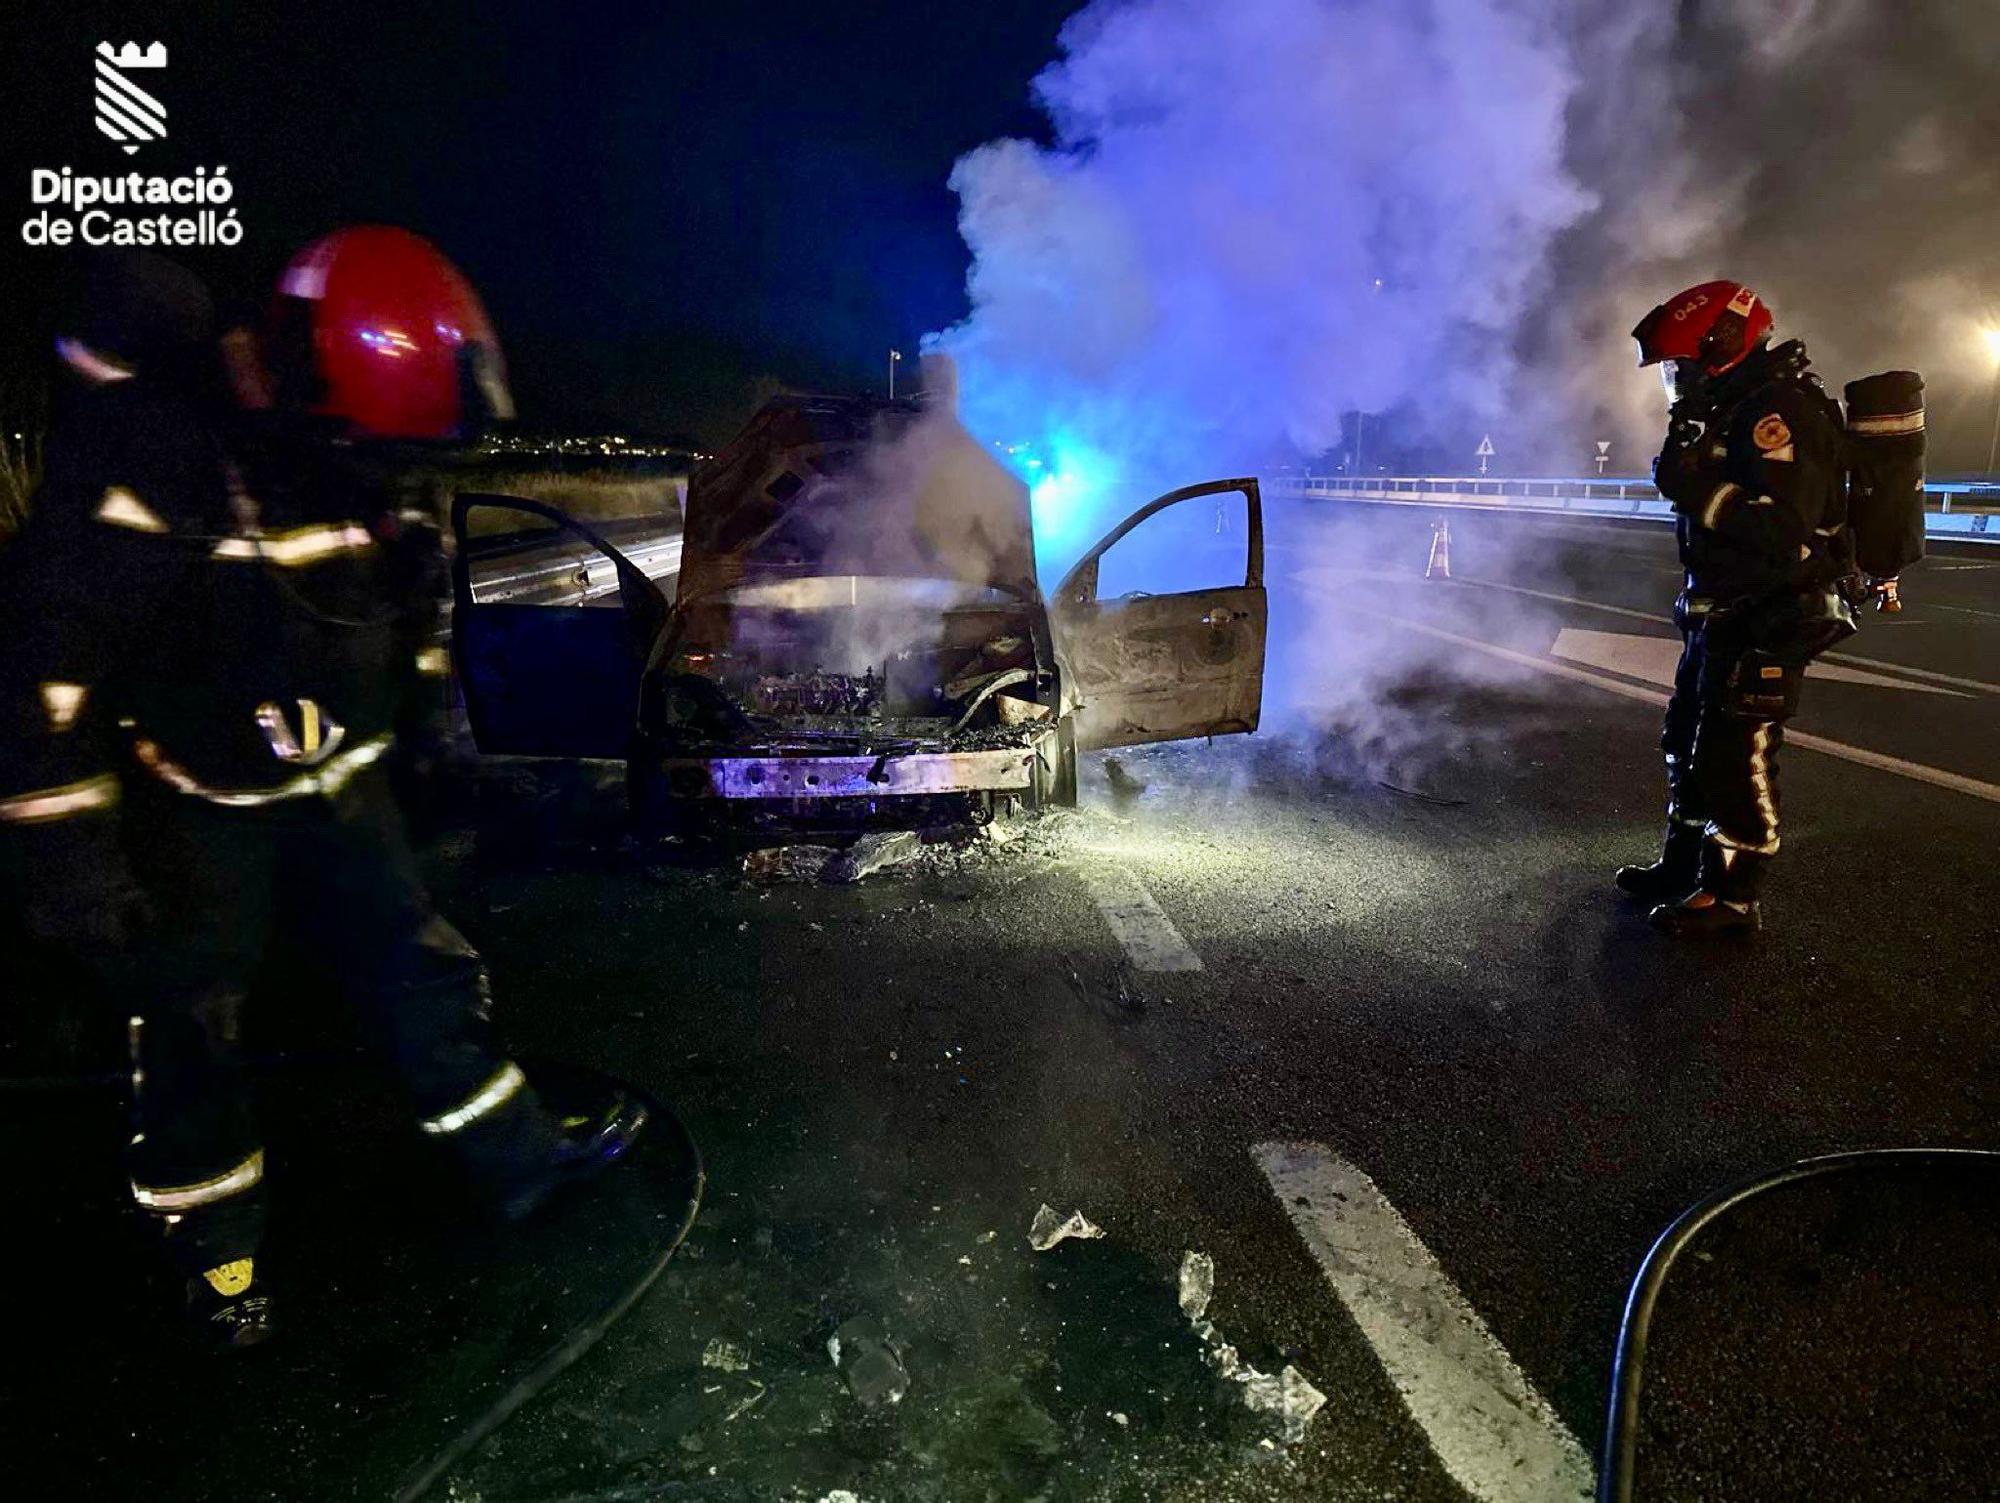 Los bomberos del parque de la Plana Baixa intervinieron en el incendio de un vehículo.